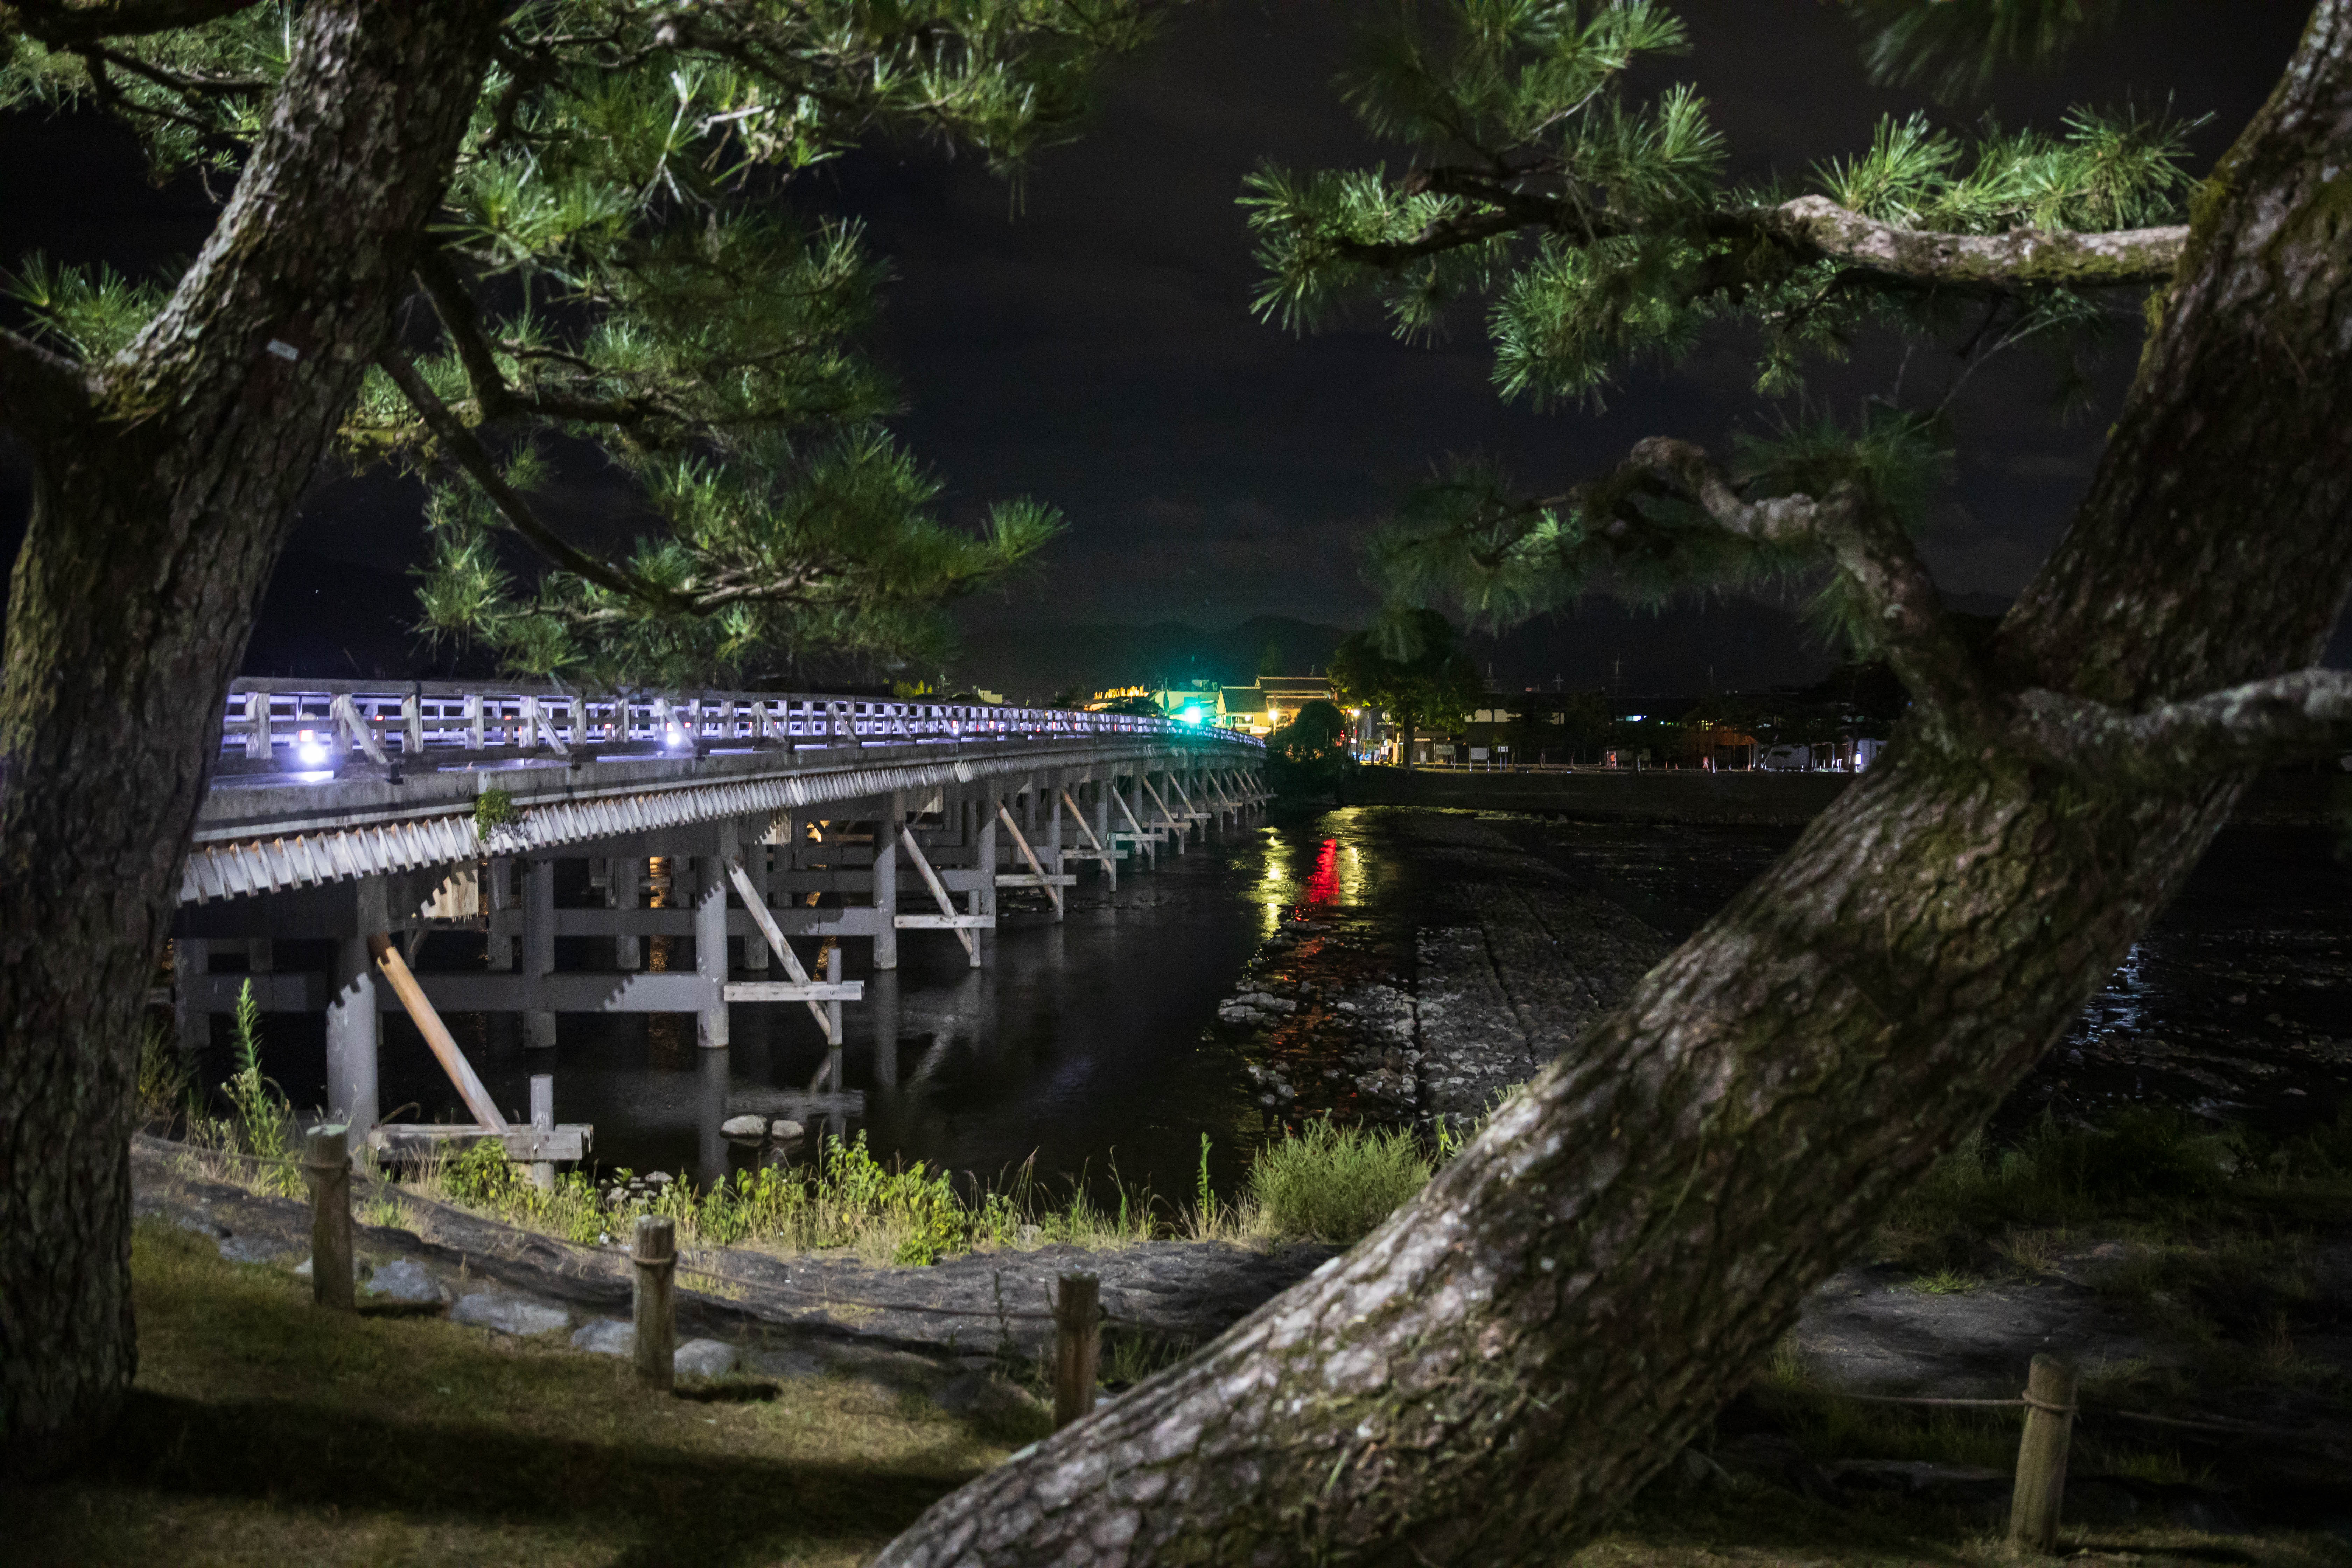 Vista nocturna de un puente de madera tradicional | Fuente: Shutterstock.com